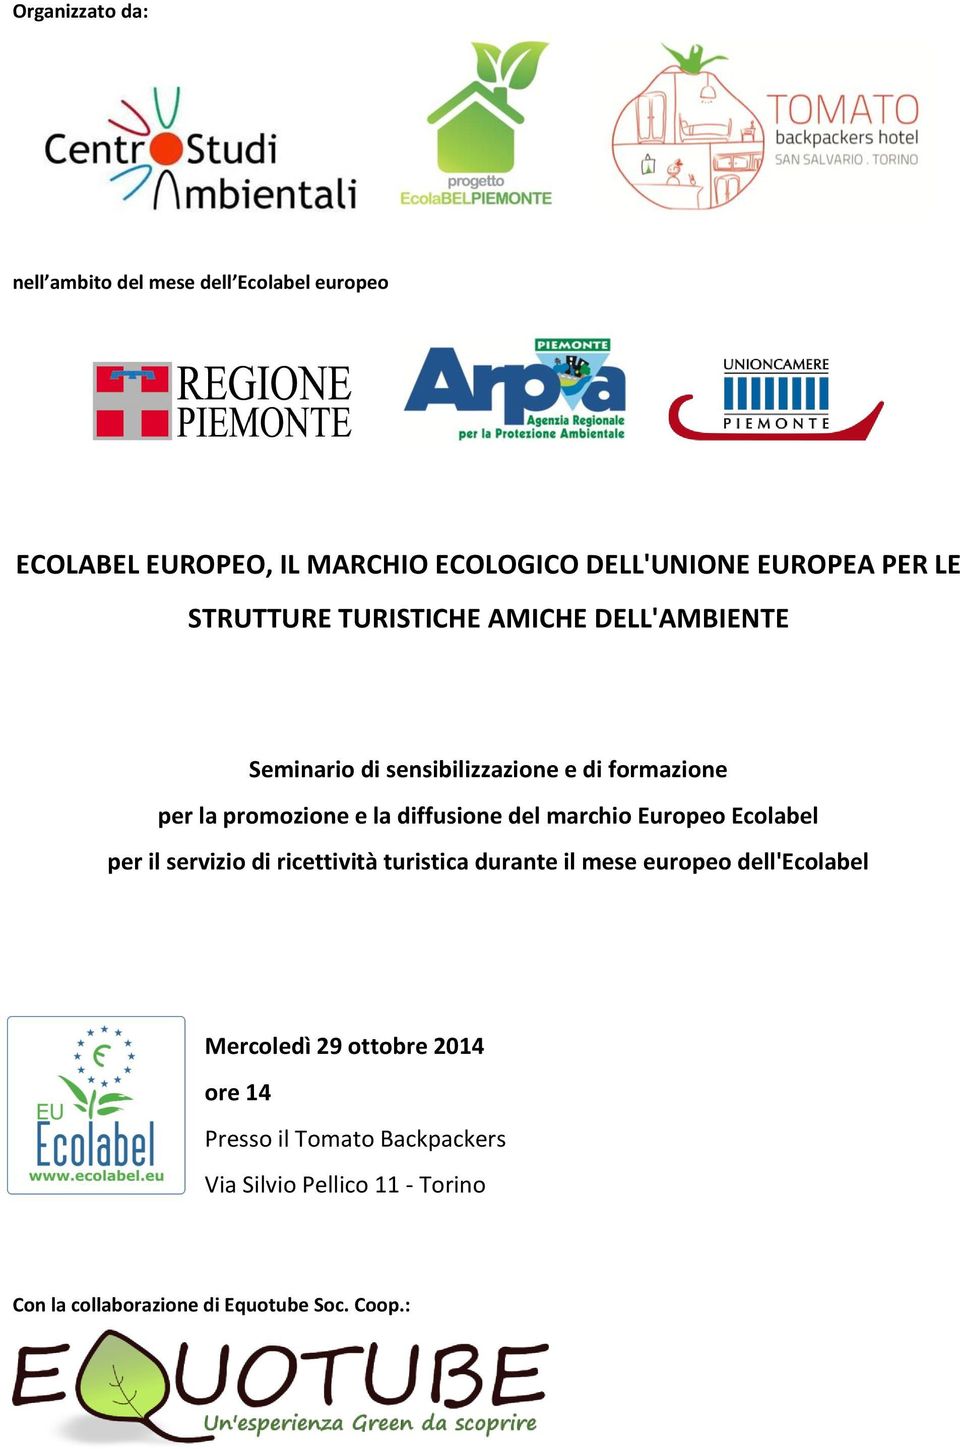 diffusione del marchio Europeo Ecolabel per il servizio di ricettività turistica durante il mese europeo dell'ecolabel